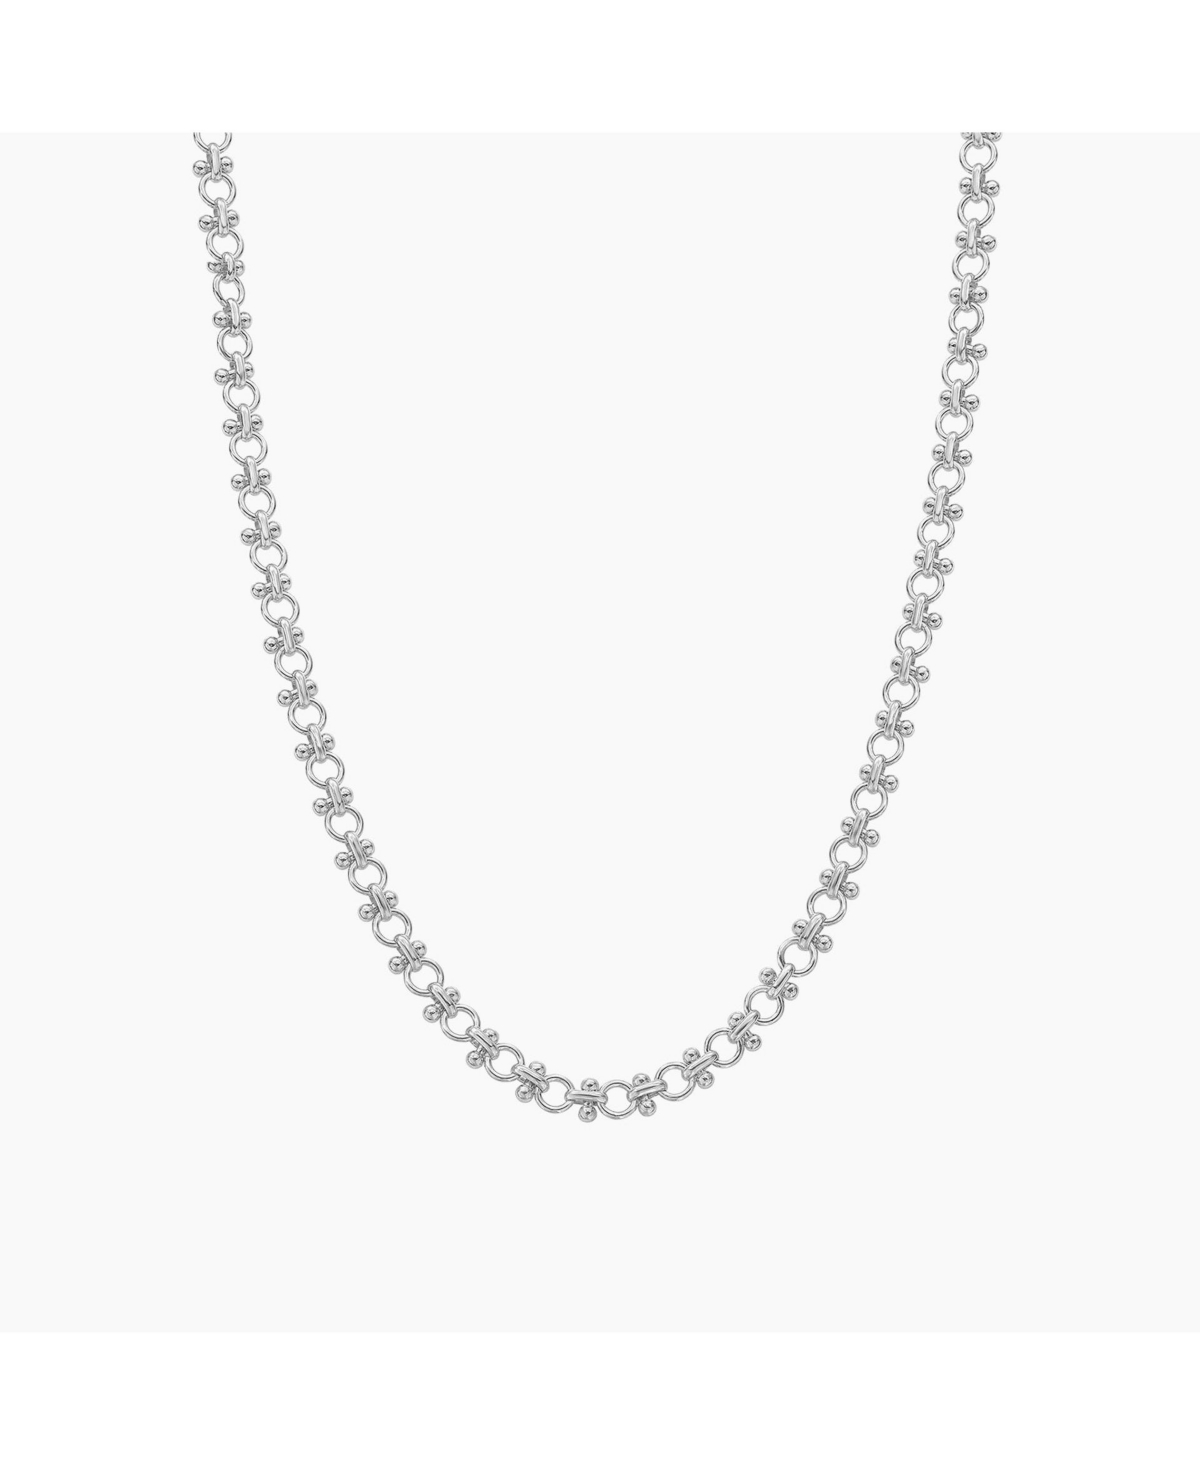 Lattice Chain Necklace - Silver